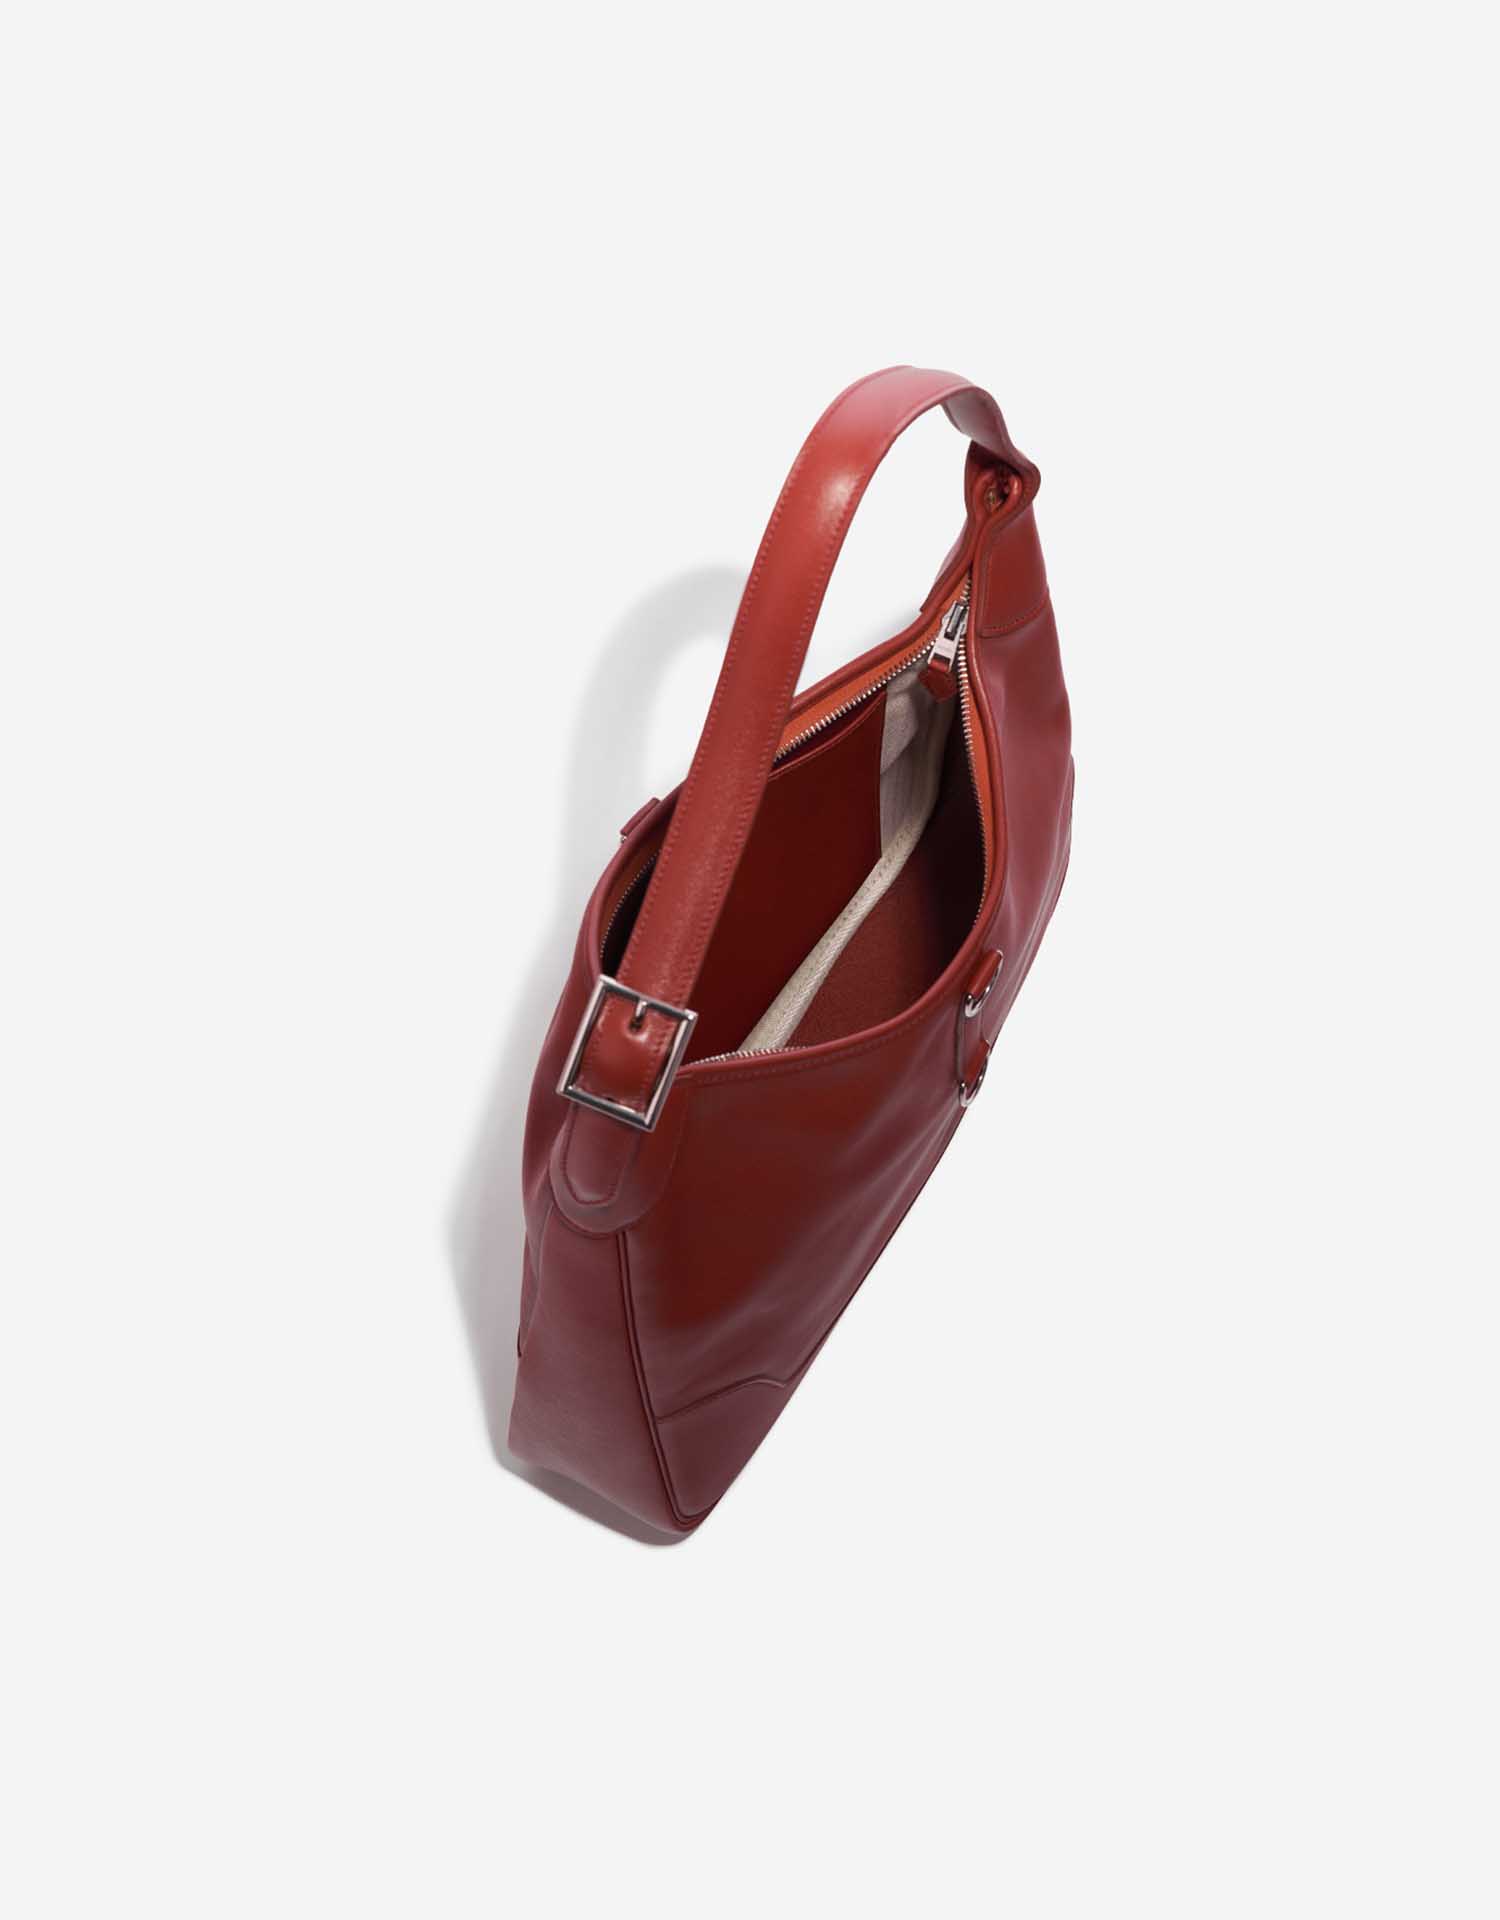 Gebrauchte Hermès Tasche Trim 35 Evercolor Rouge Venitien Red Inside | Verkaufen Sie Ihre Designer-Tasche auf Saclab.com